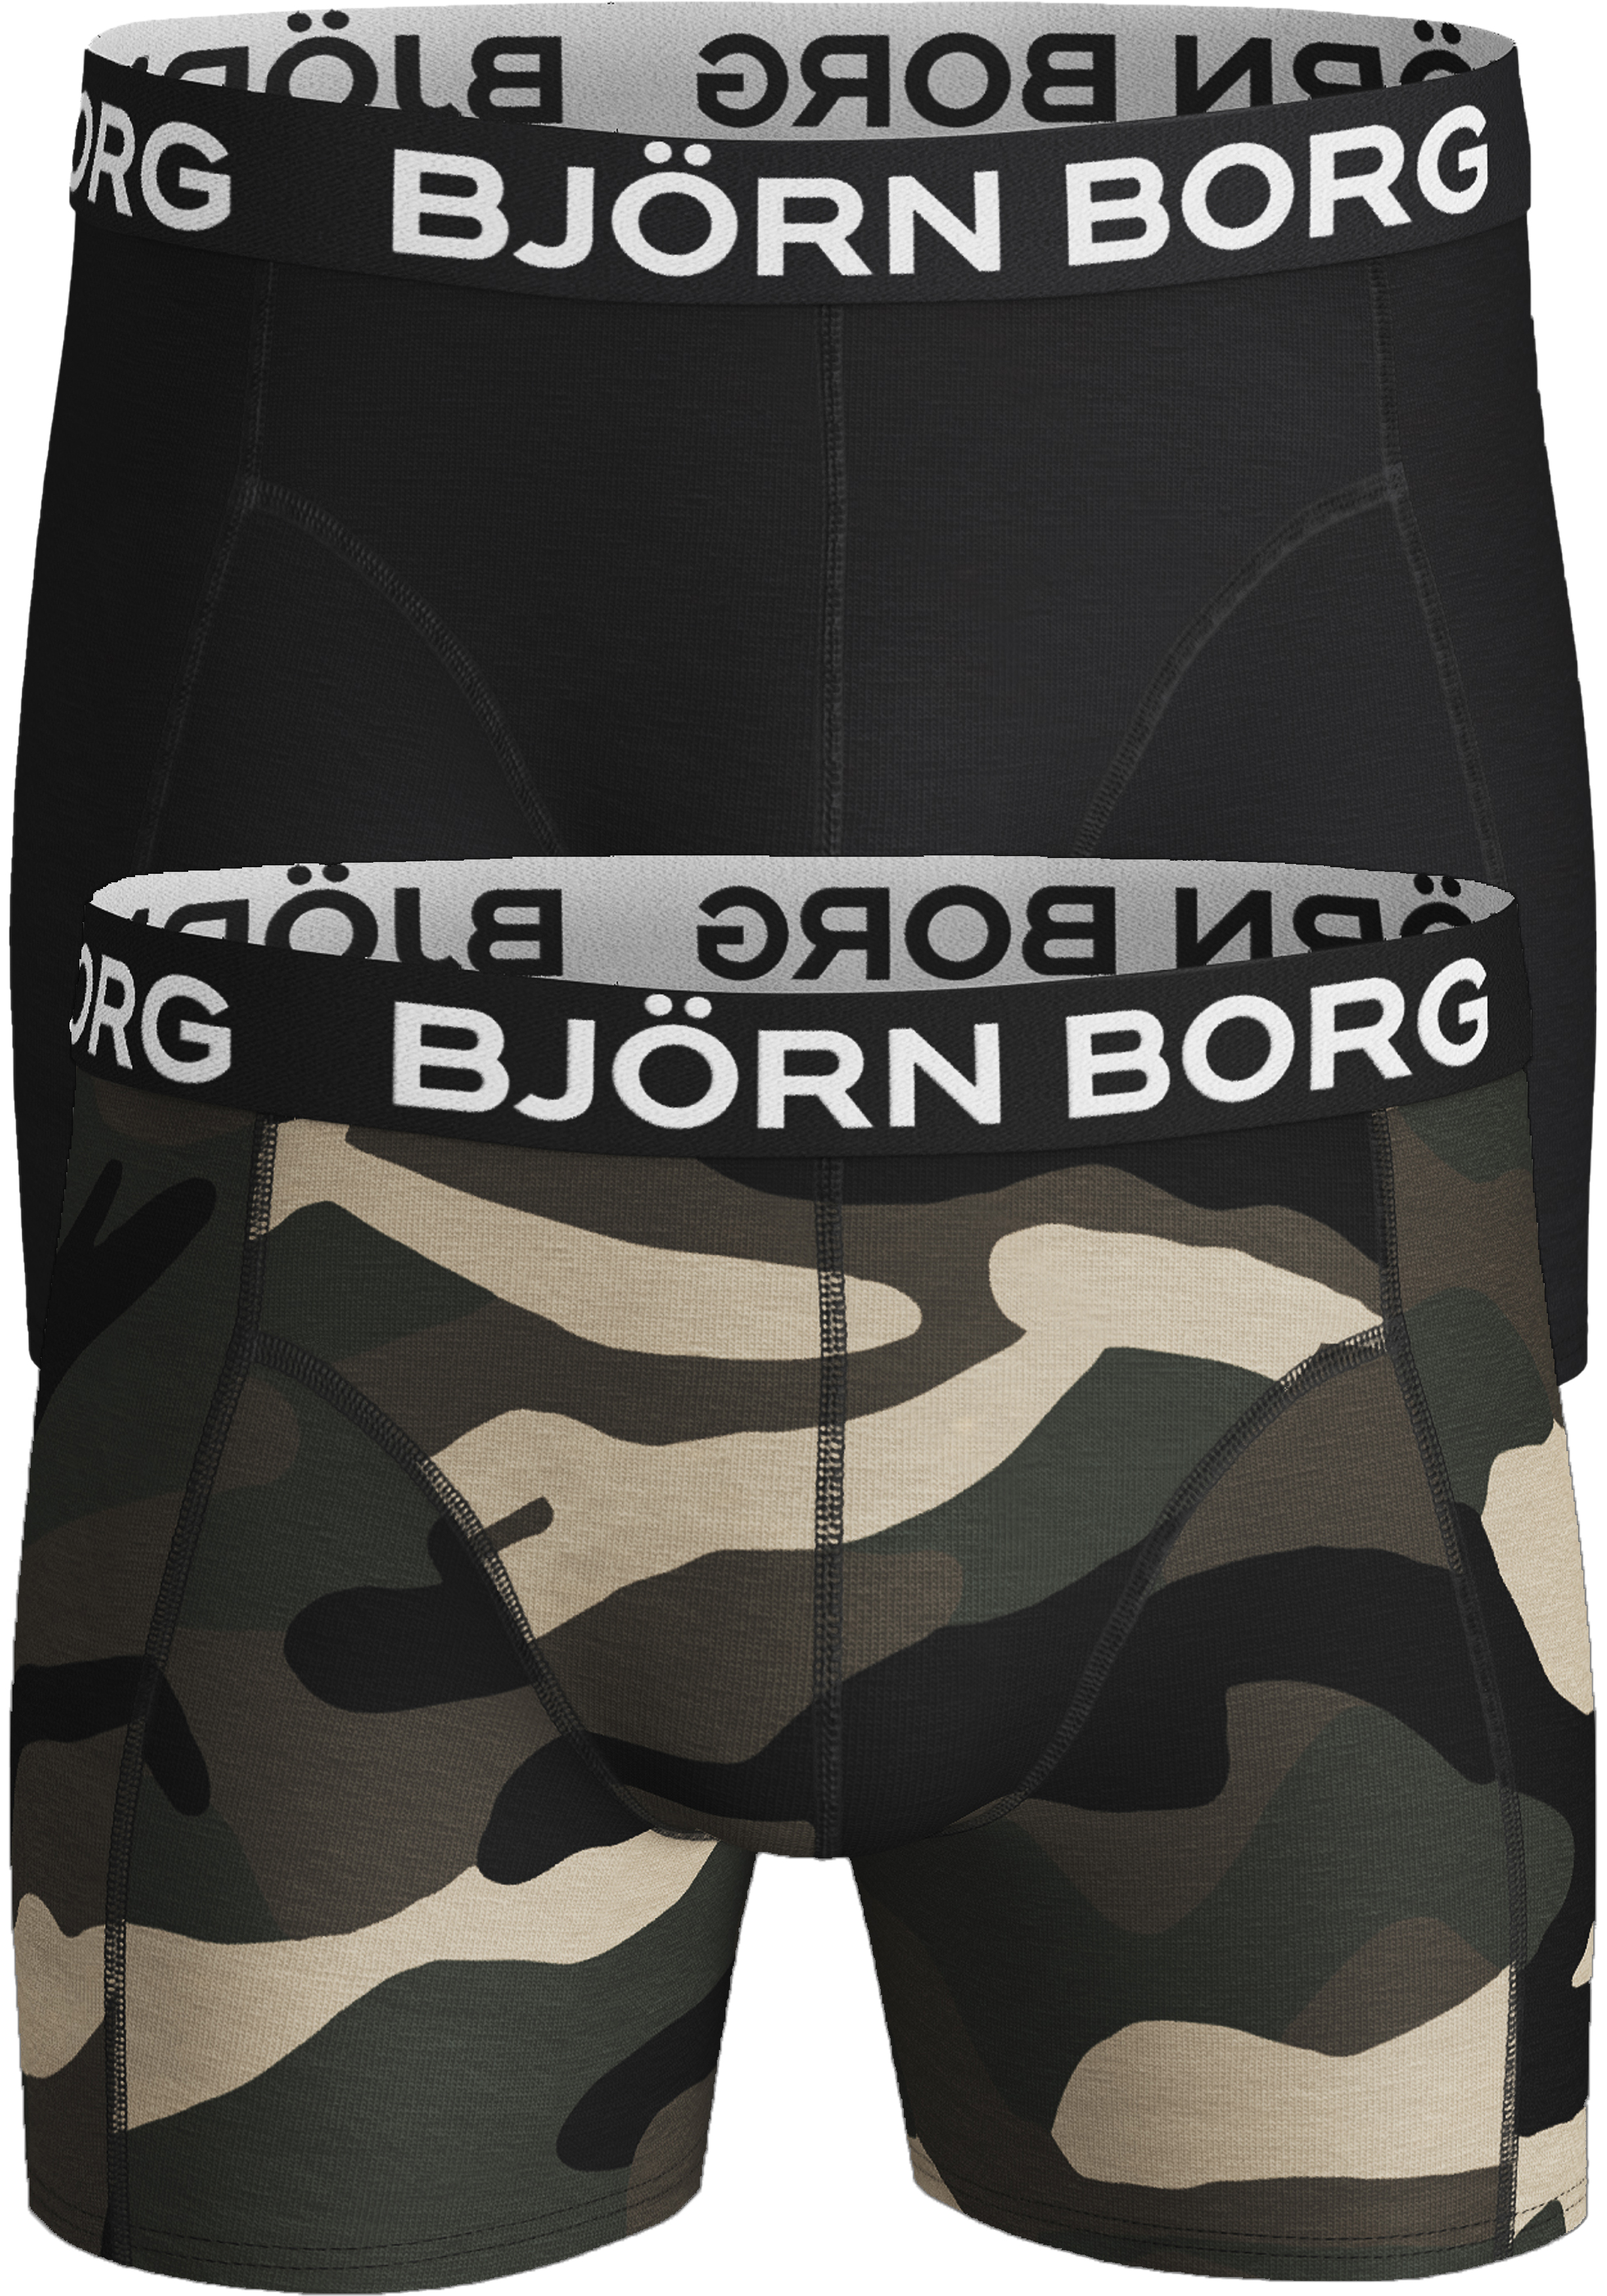 handelaar Catastrofaal Verhuizer Bjorn Borg boxershorts Core (2-pack), heren boxers normale lengte,... -  Shop de nieuwste voorjaarsmode